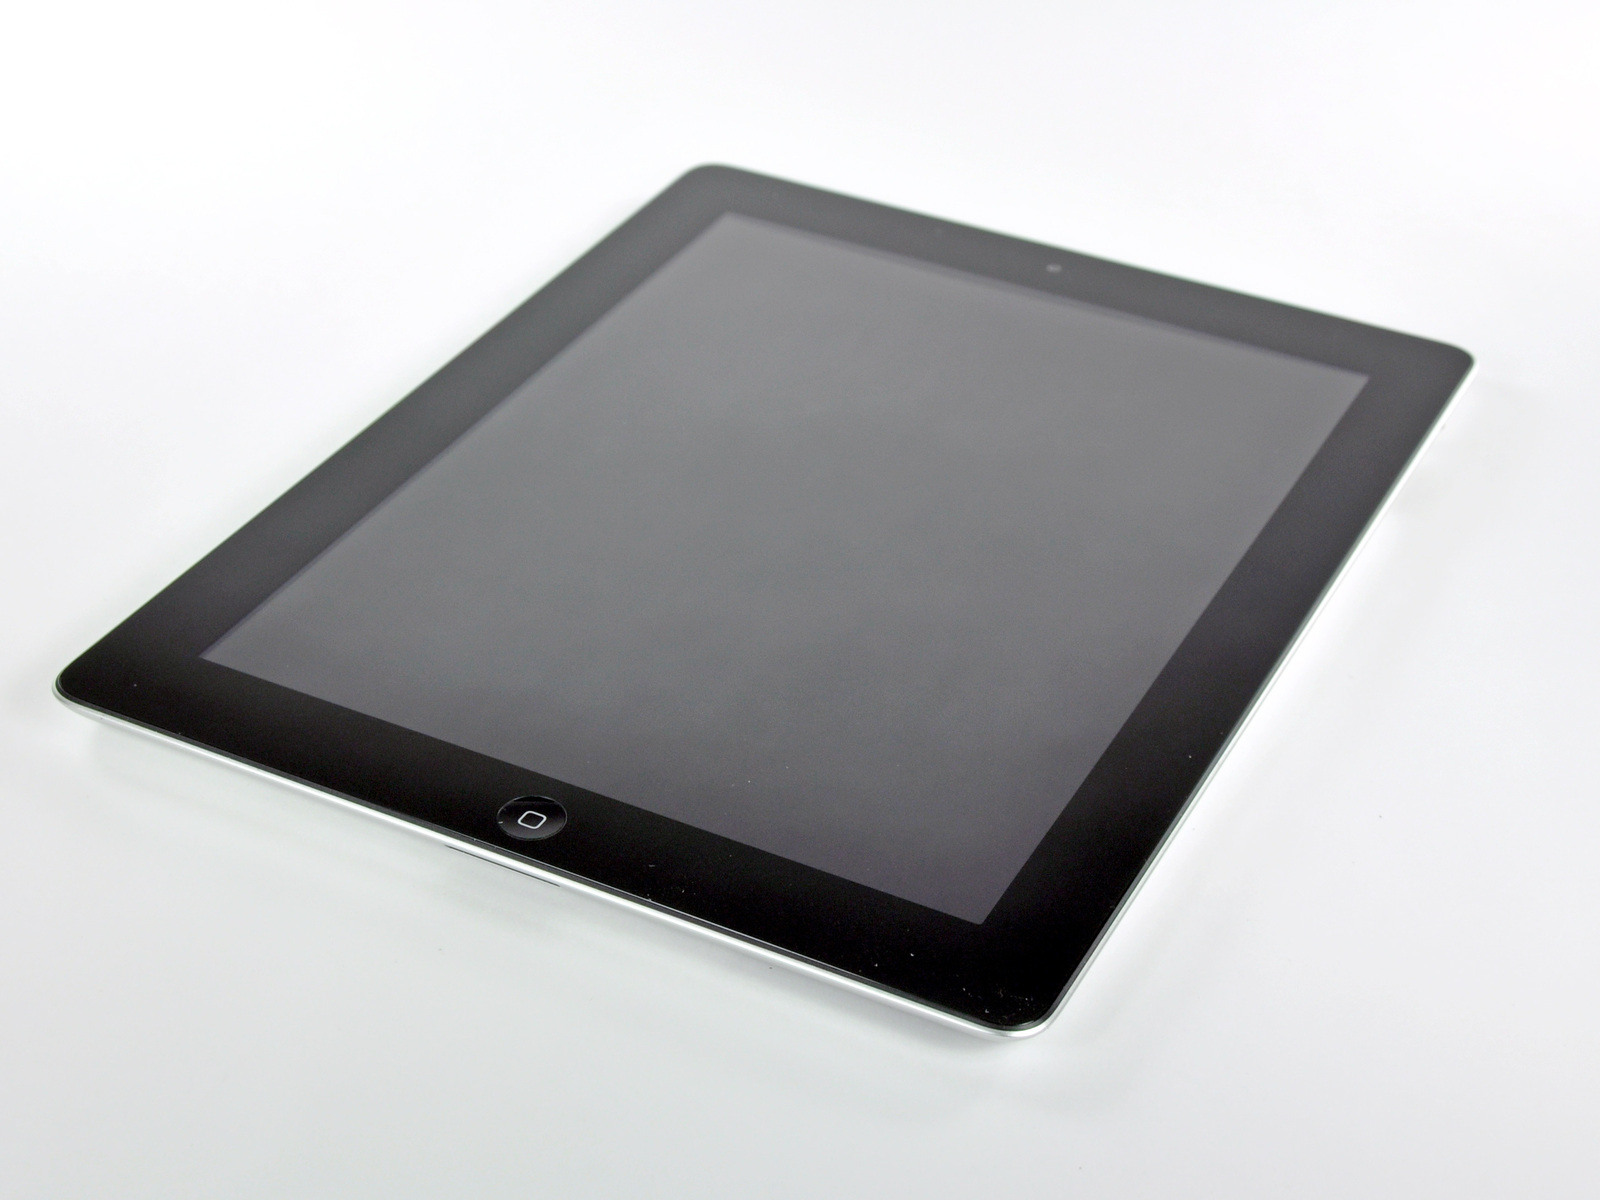 Müügiks pakutavad vidinad on iFixiti poolt demonteeritud vidinad: praegune ohver on iPad 2 [atualizado]